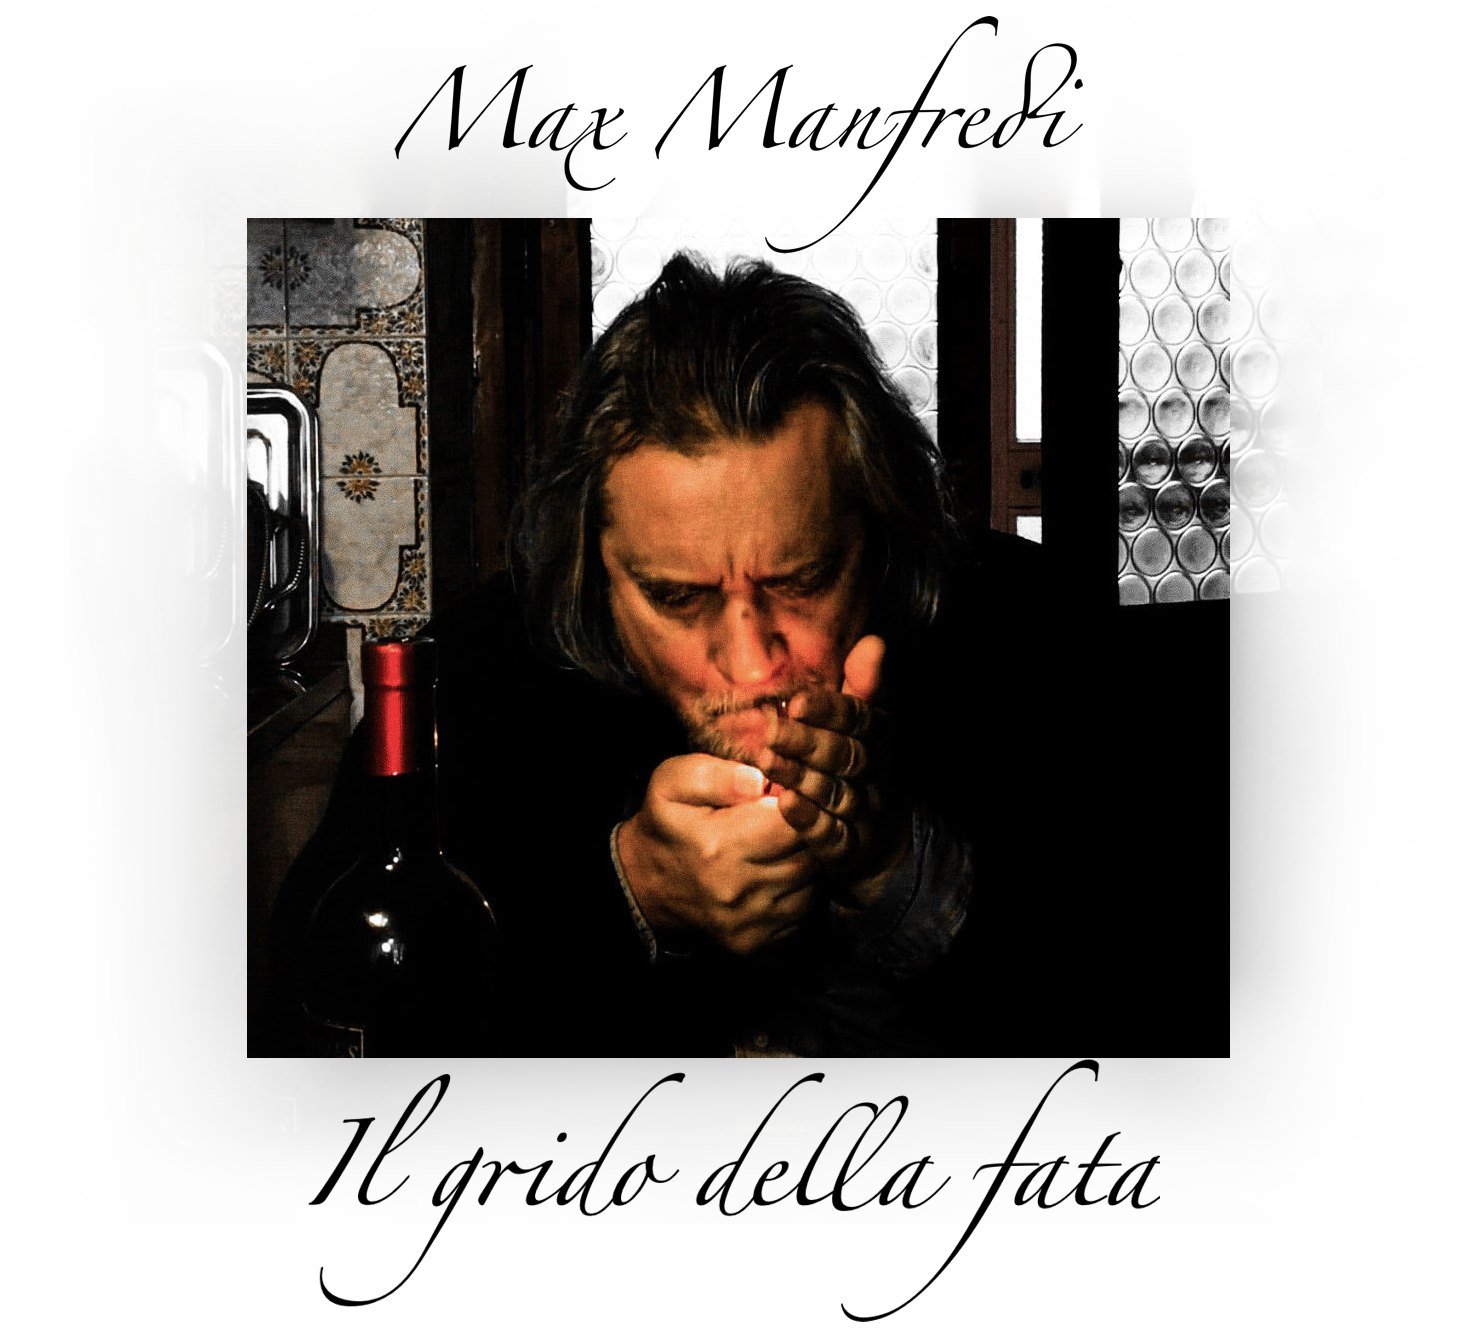 Max Manfredi presenta il nuovo disco all’Isola Ritrovata sabato 9